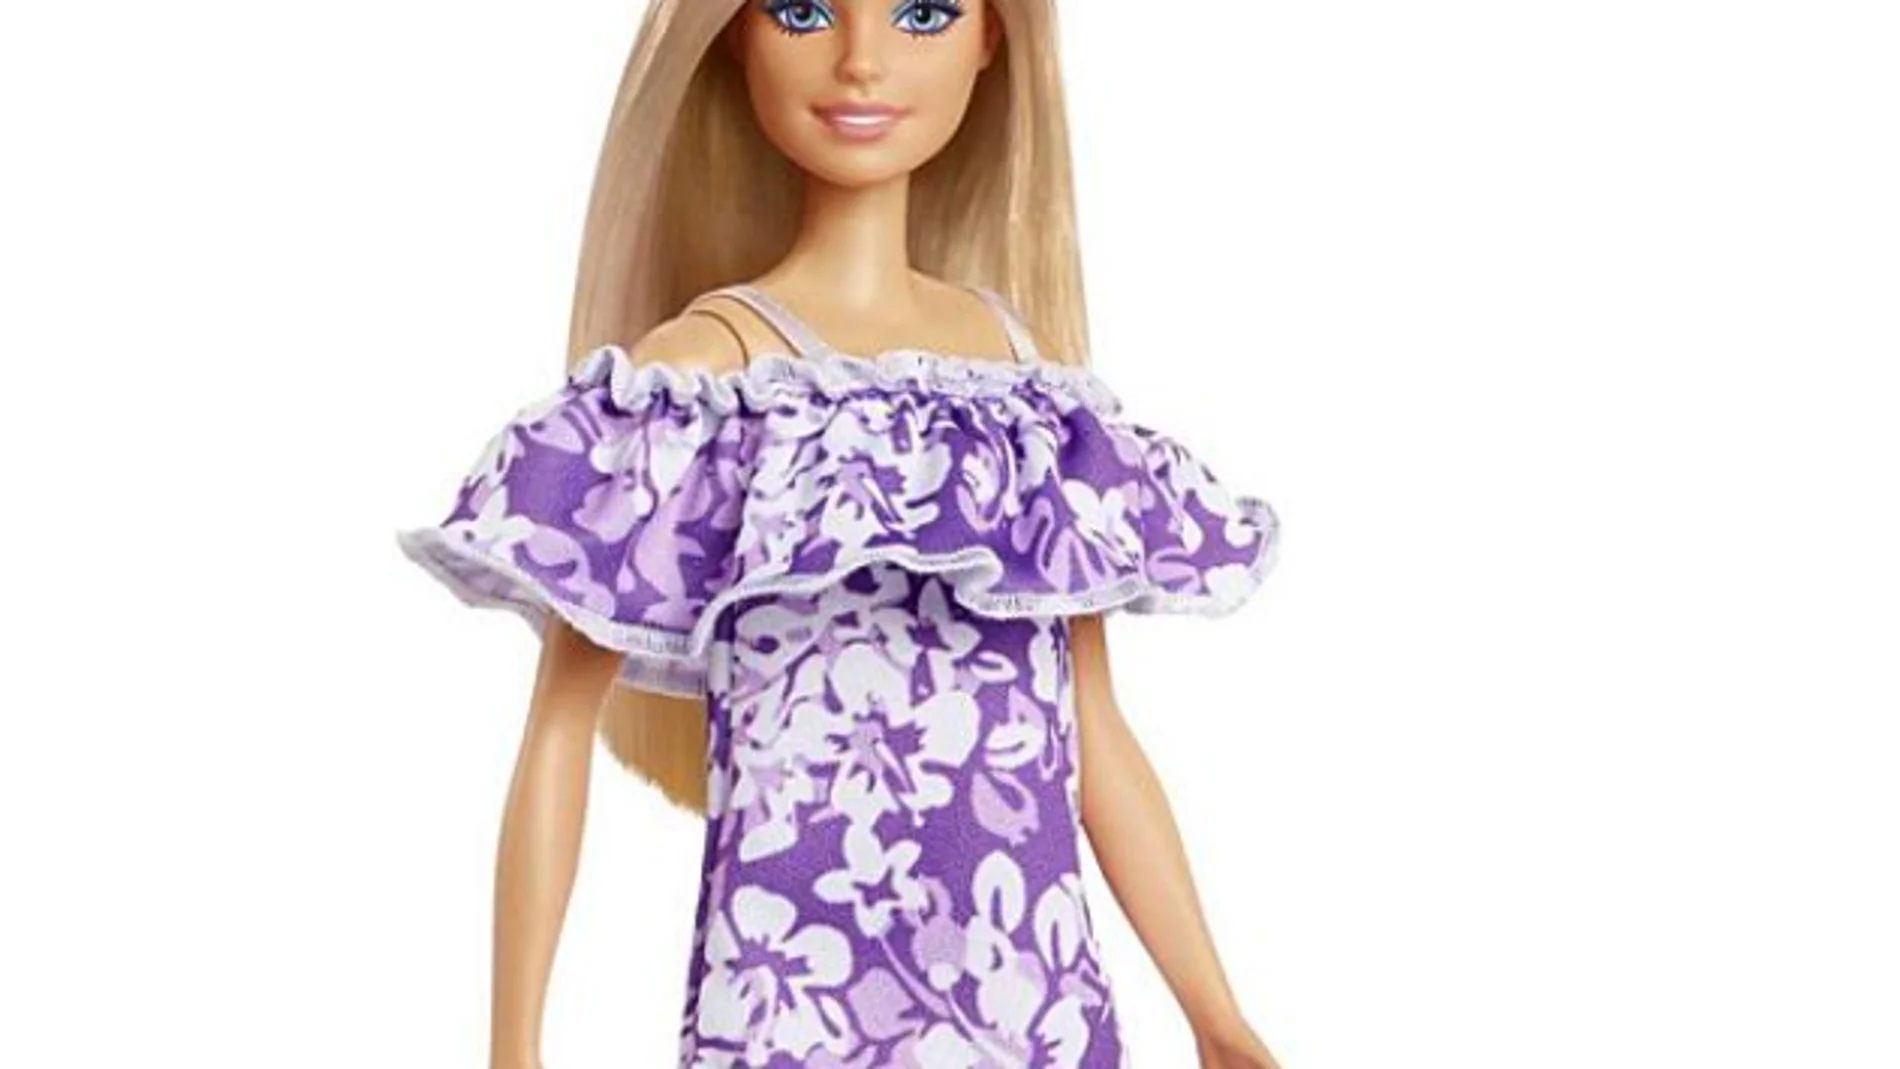 Barbie lanza una colección sostenible fabricada con un 90% de plásticos reciclados